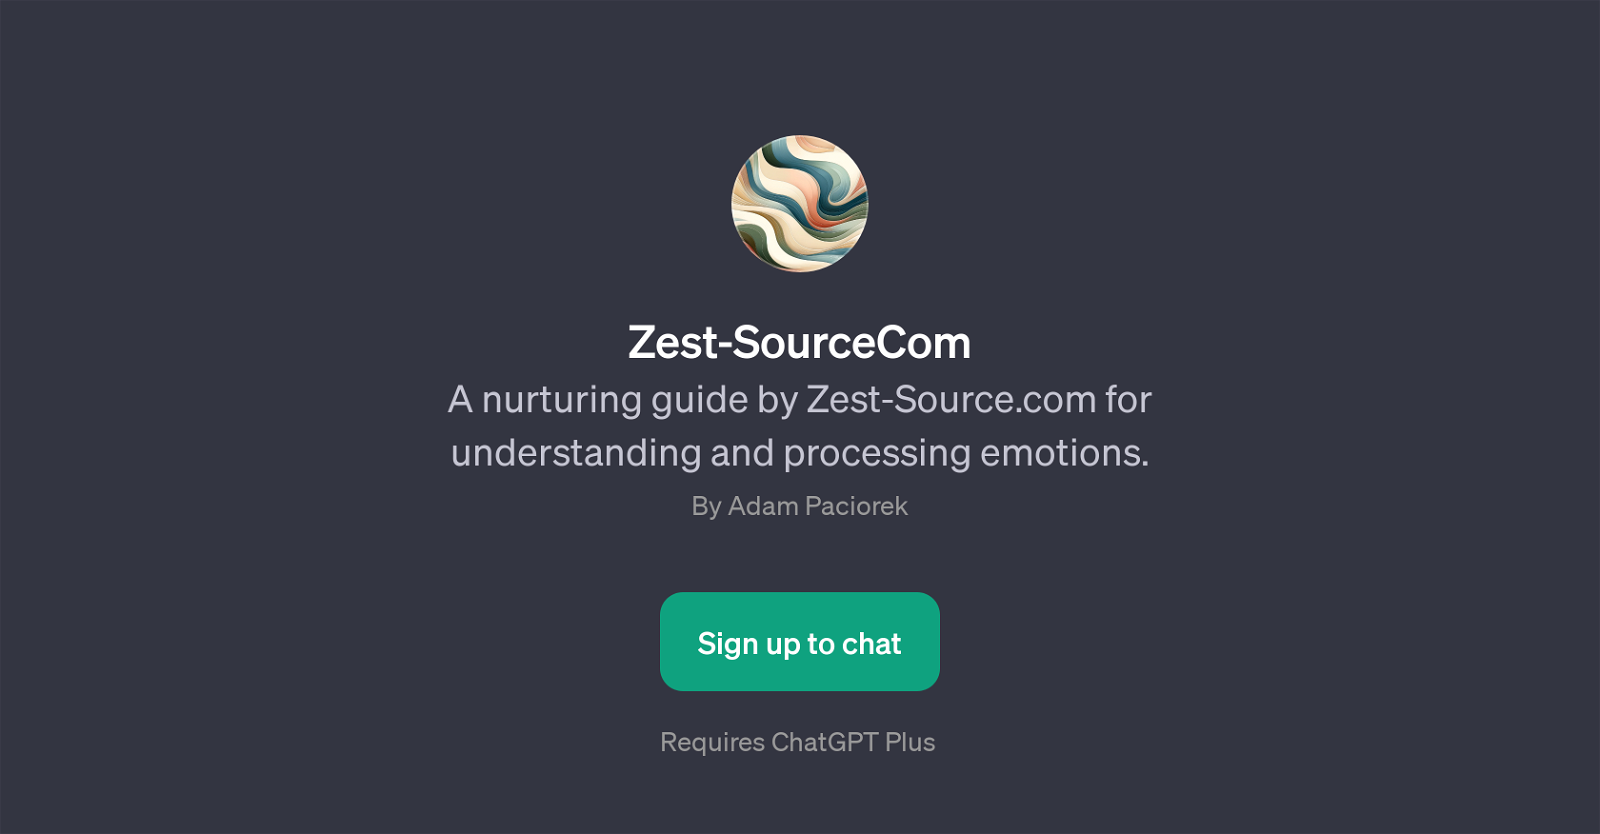 Zest-SourceCom website